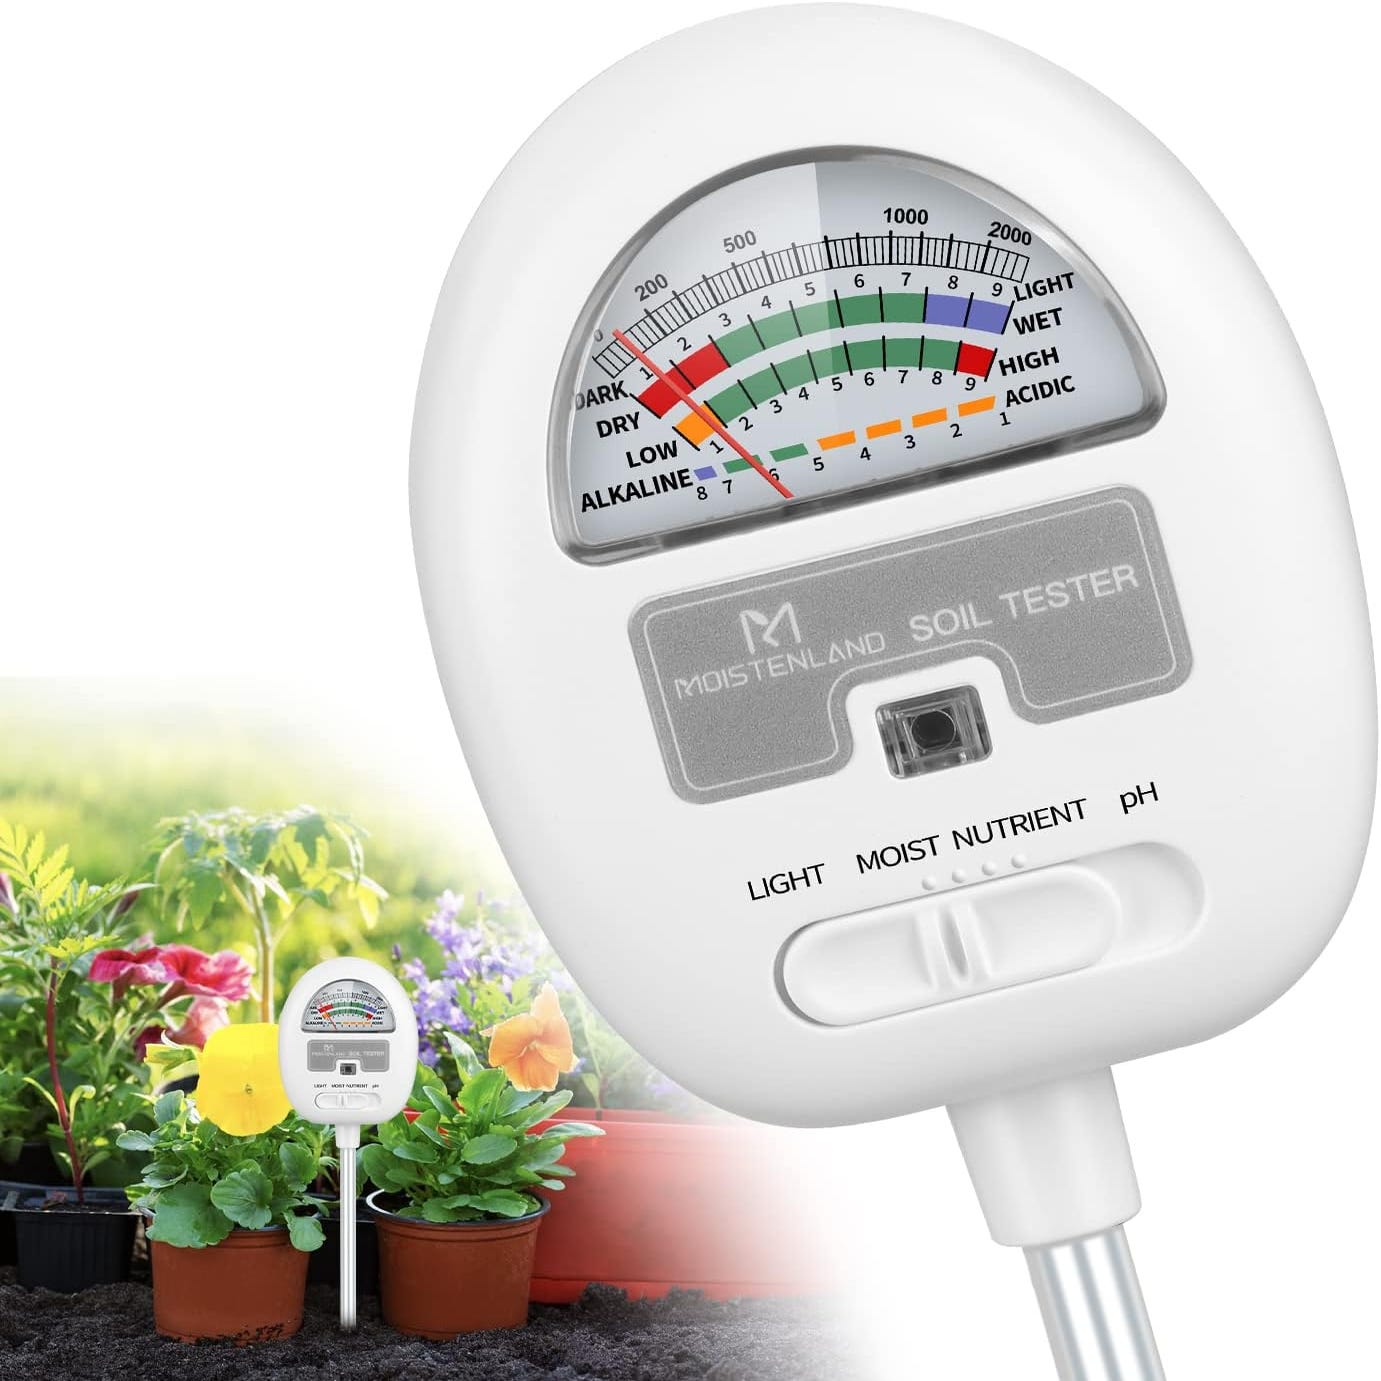 Humidimètre du sol, testeur de pH du sol 4 en 1, humidité du sol /lumière/nutriments/pH-mètre pour jardinage, pelouse, agriculture